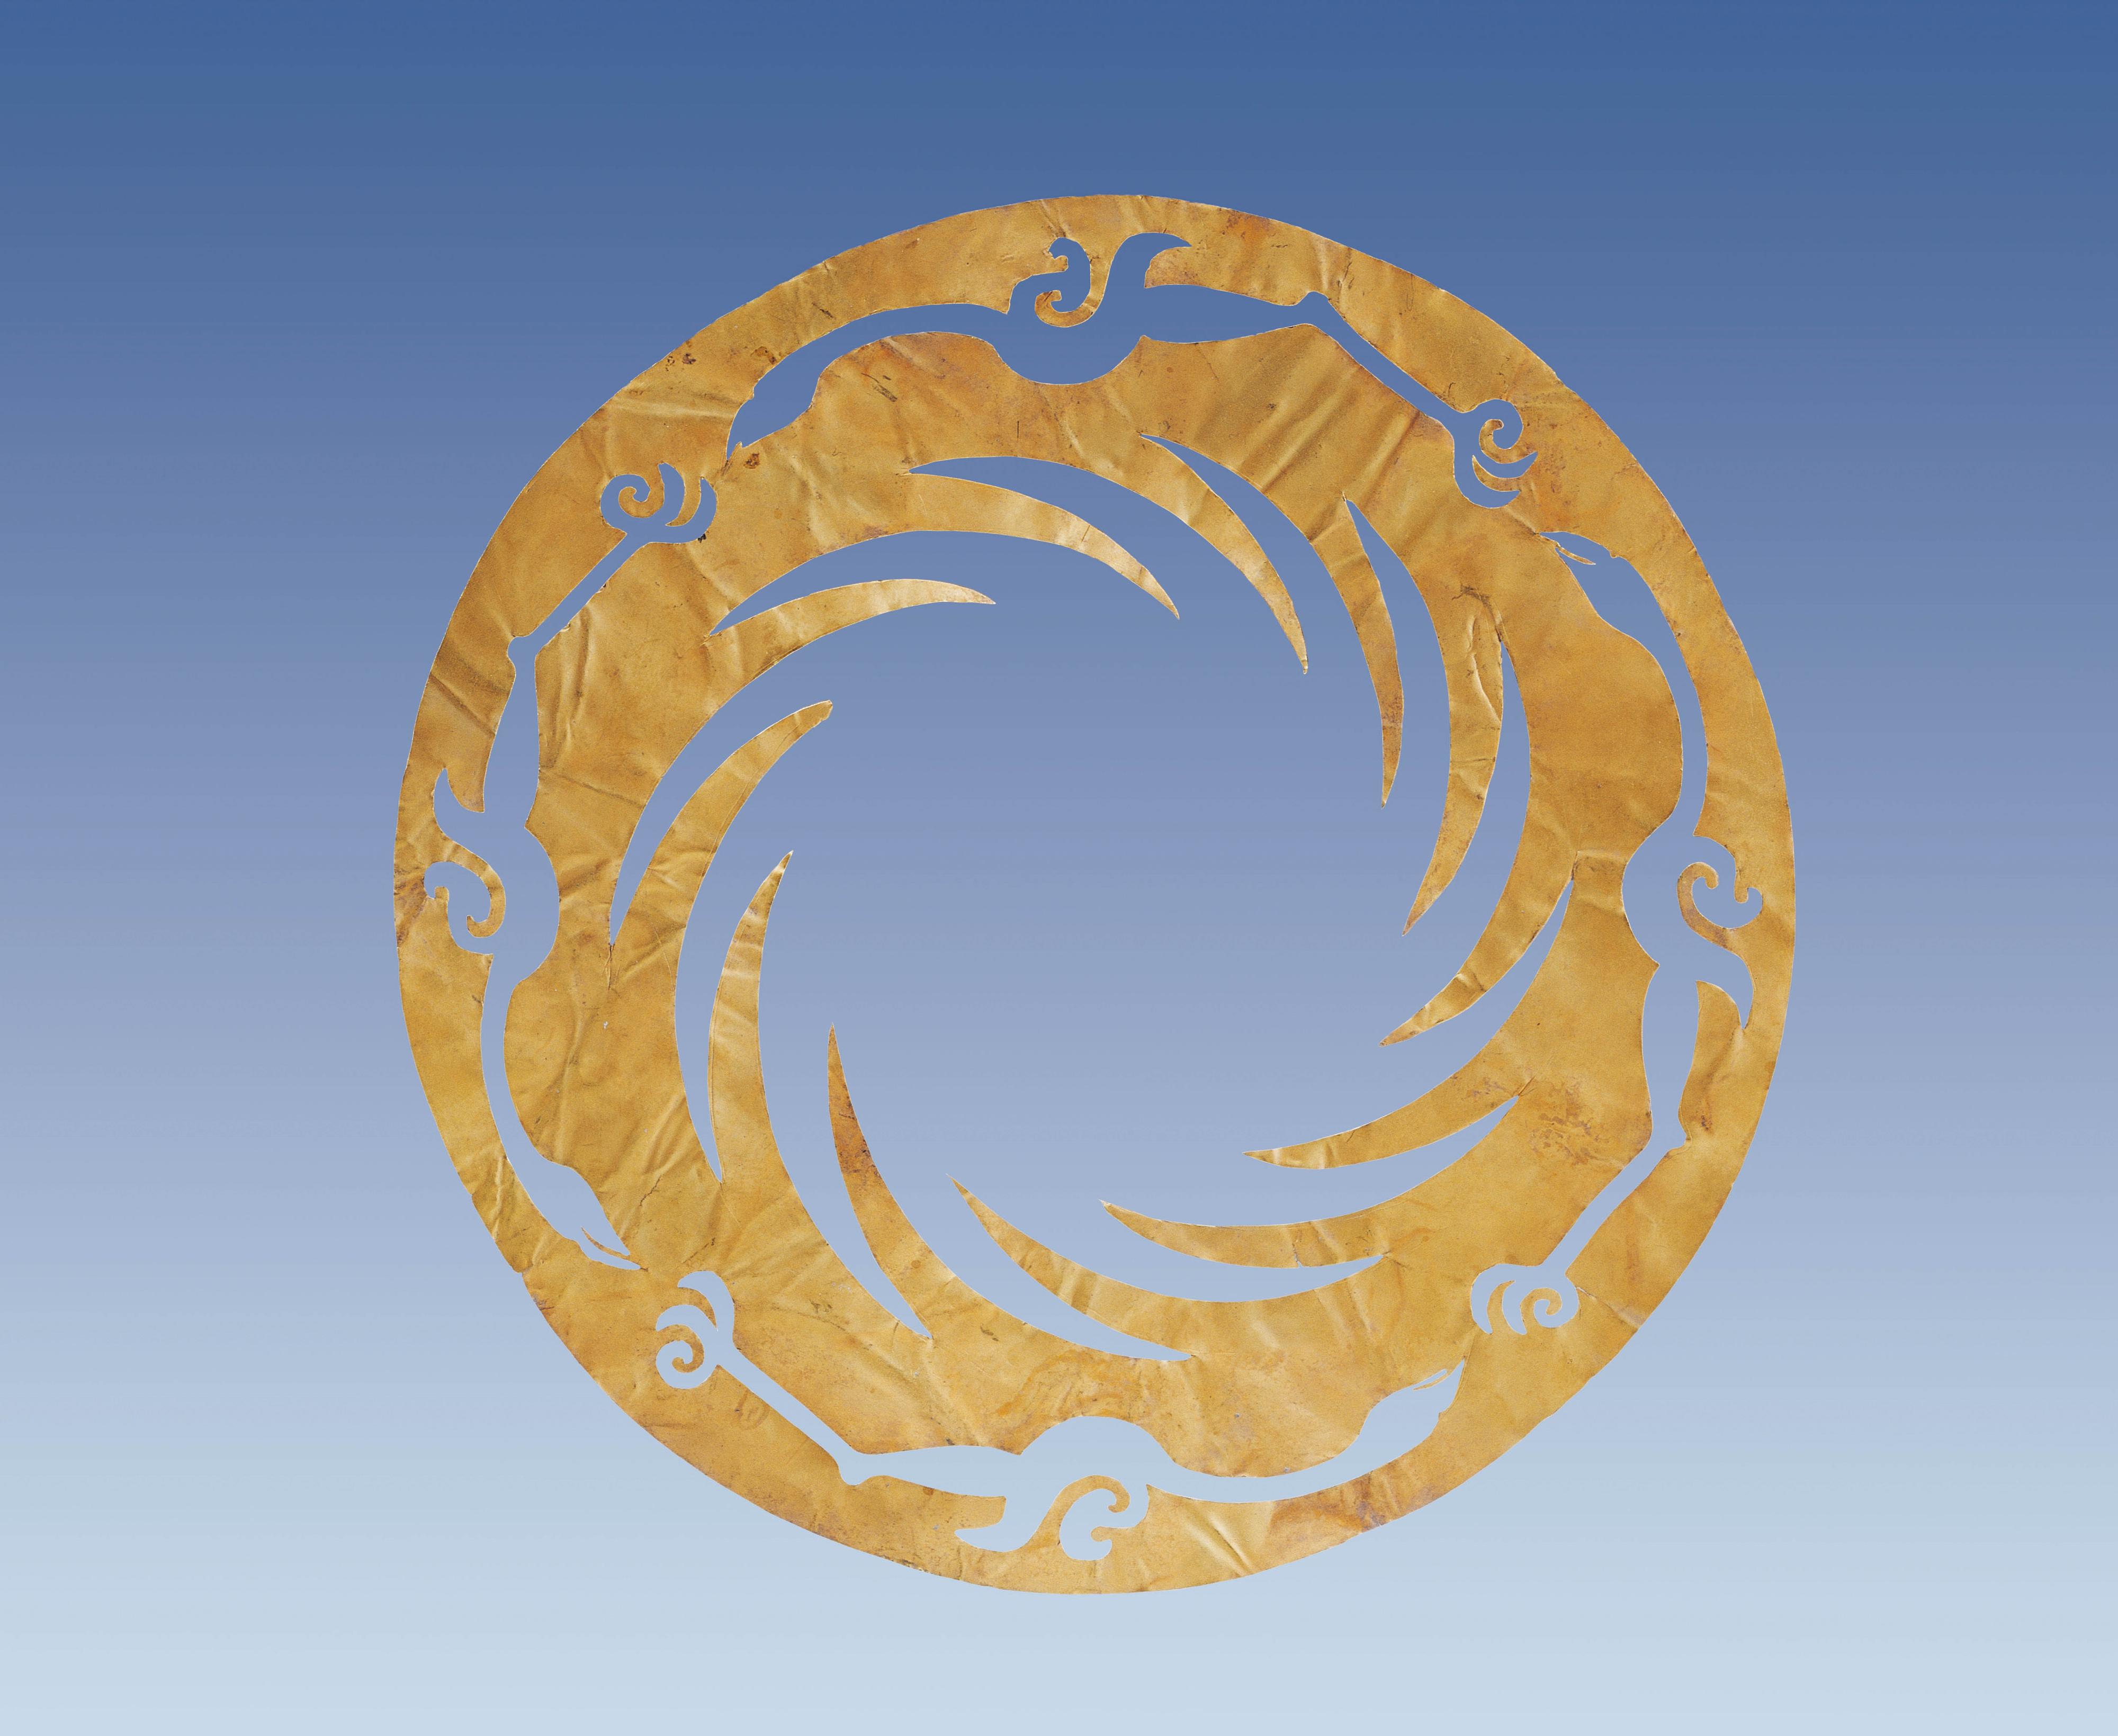 香港文物探知館明日（十二月三十日）起舉辦「金沙之光──古蜀文明展」。圖示「太陽神鳥」金箔飾的複製品，其原型屬金沙遺址中最重要的國寶級文物，是展覽重點展品之一。